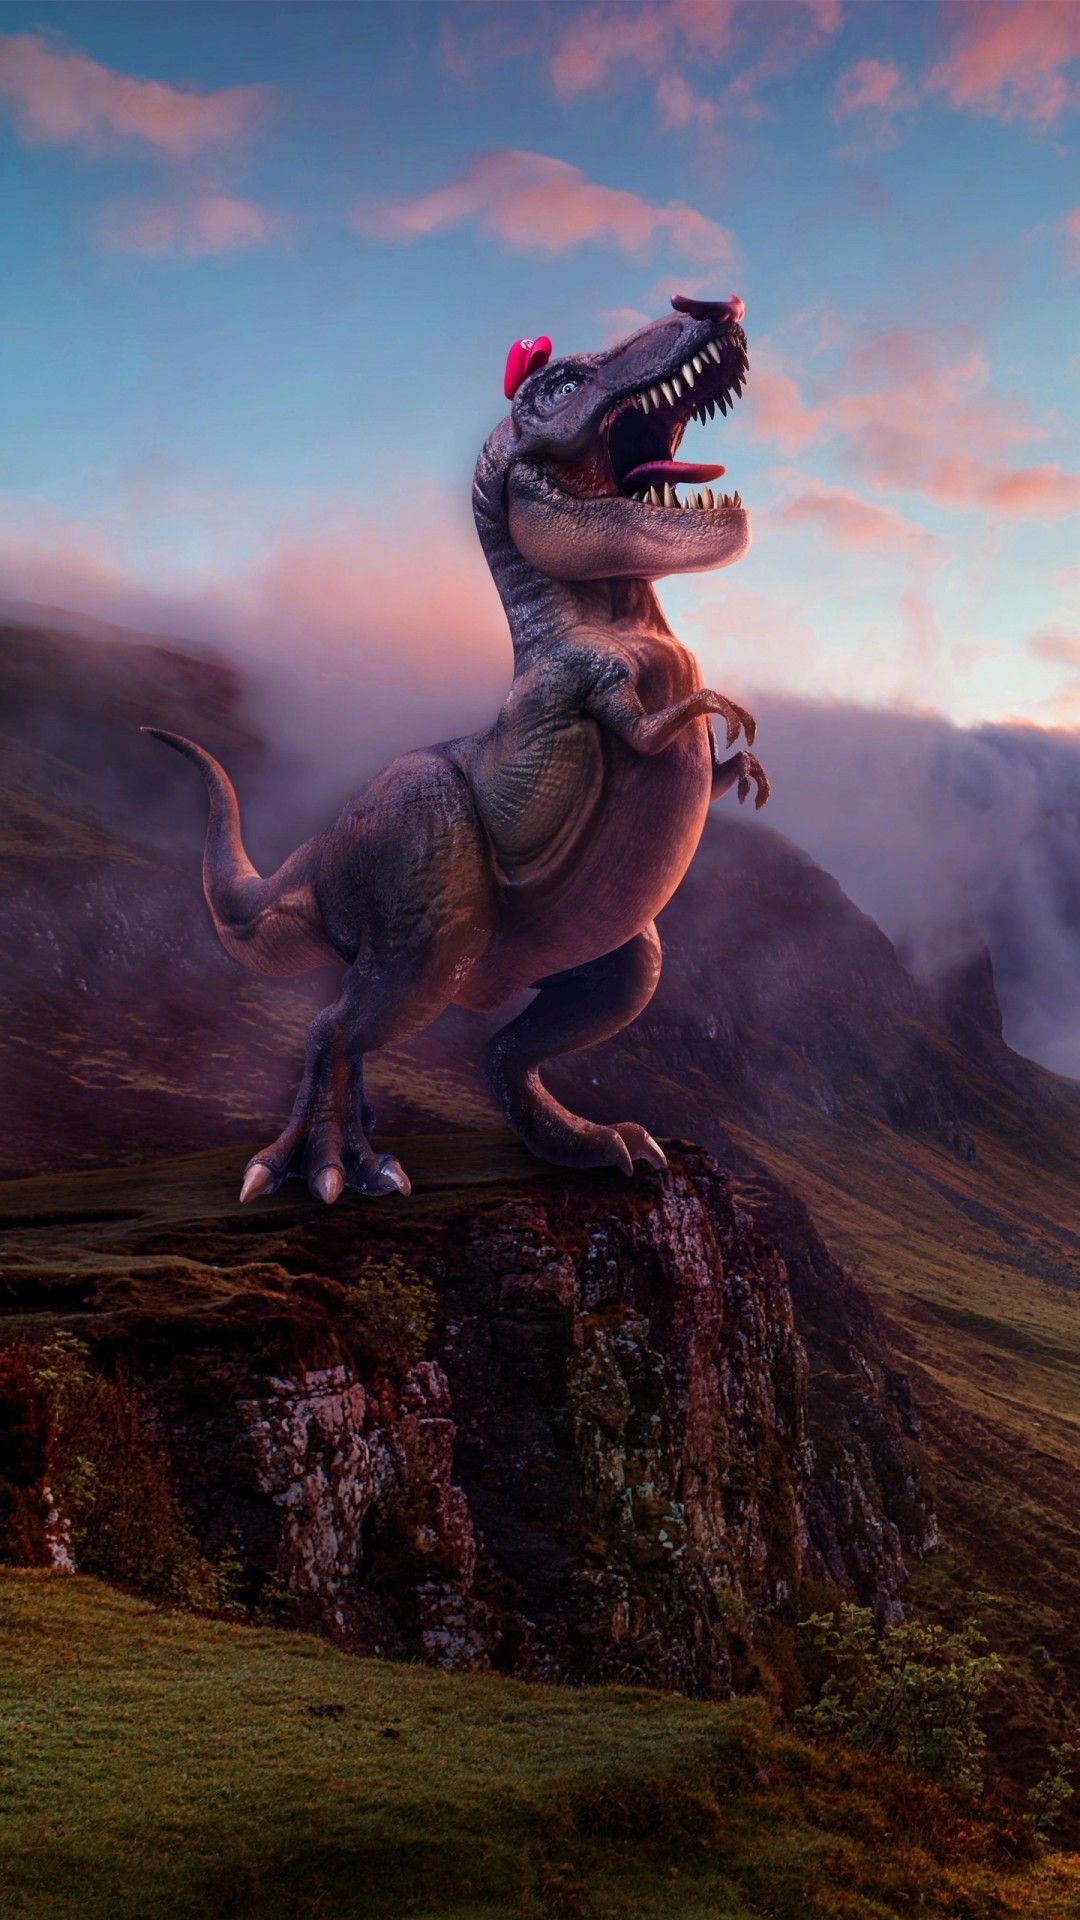 Wallpaper ID 31148  Jurassic World Fallen Kingdom Chris Pratt dinosaur  4k free download